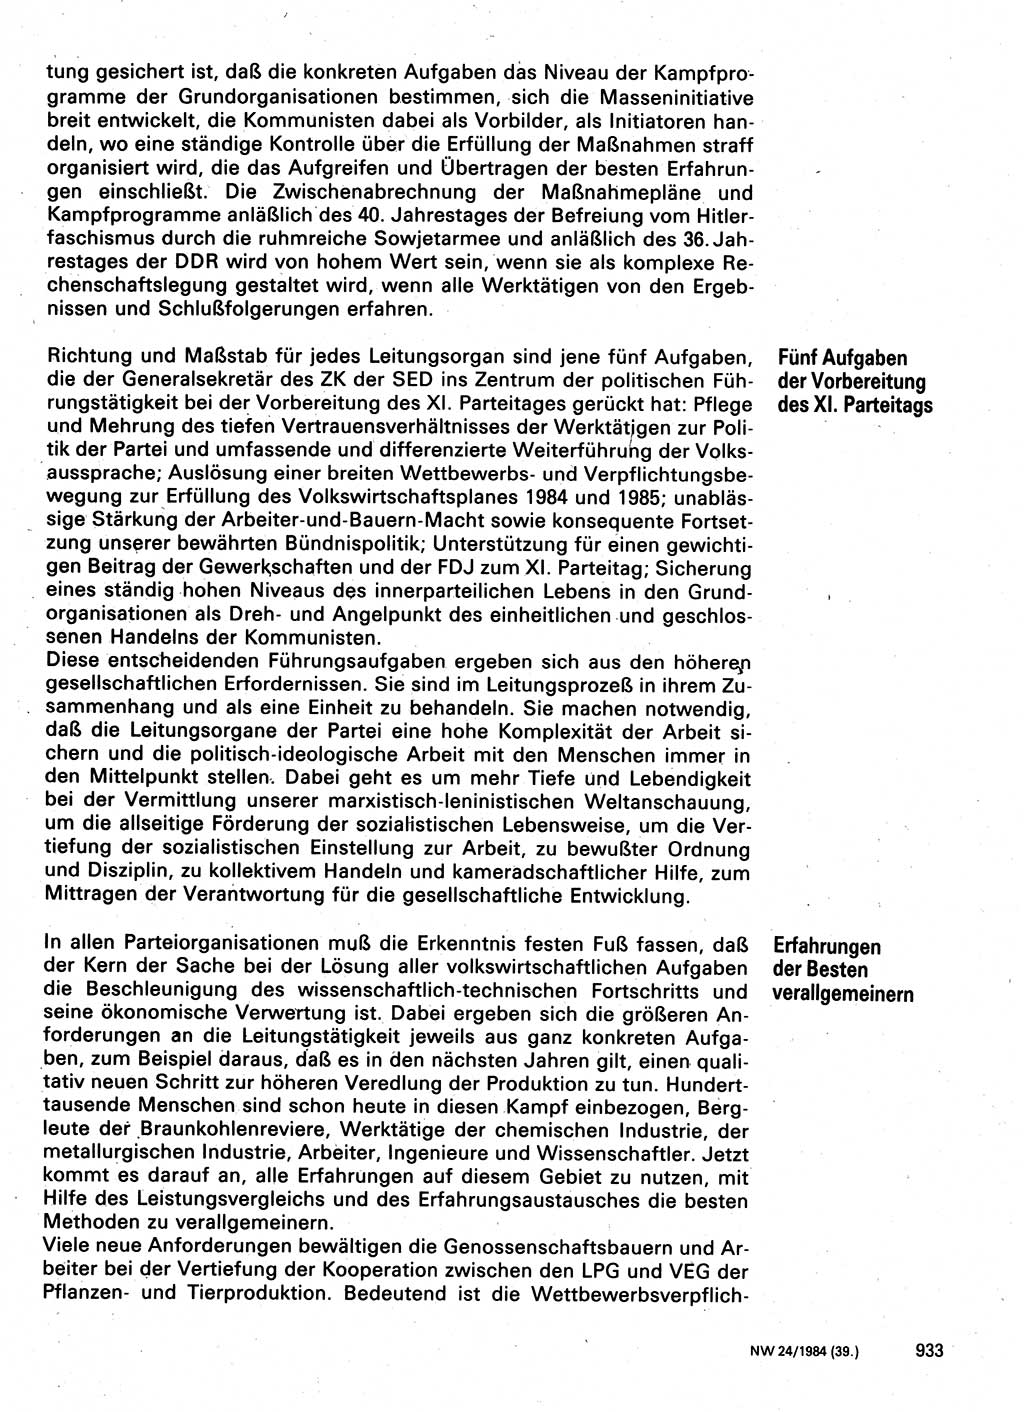 Neuer Weg (NW), Organ des Zentralkomitees (ZK) der SED (Sozialistische Einheitspartei Deutschlands) für Fragen des Parteilebens, 39. Jahrgang [Deutsche Demokratische Republik (DDR)] 1984, Seite 933 (NW ZK SED DDR 1984, S. 933)